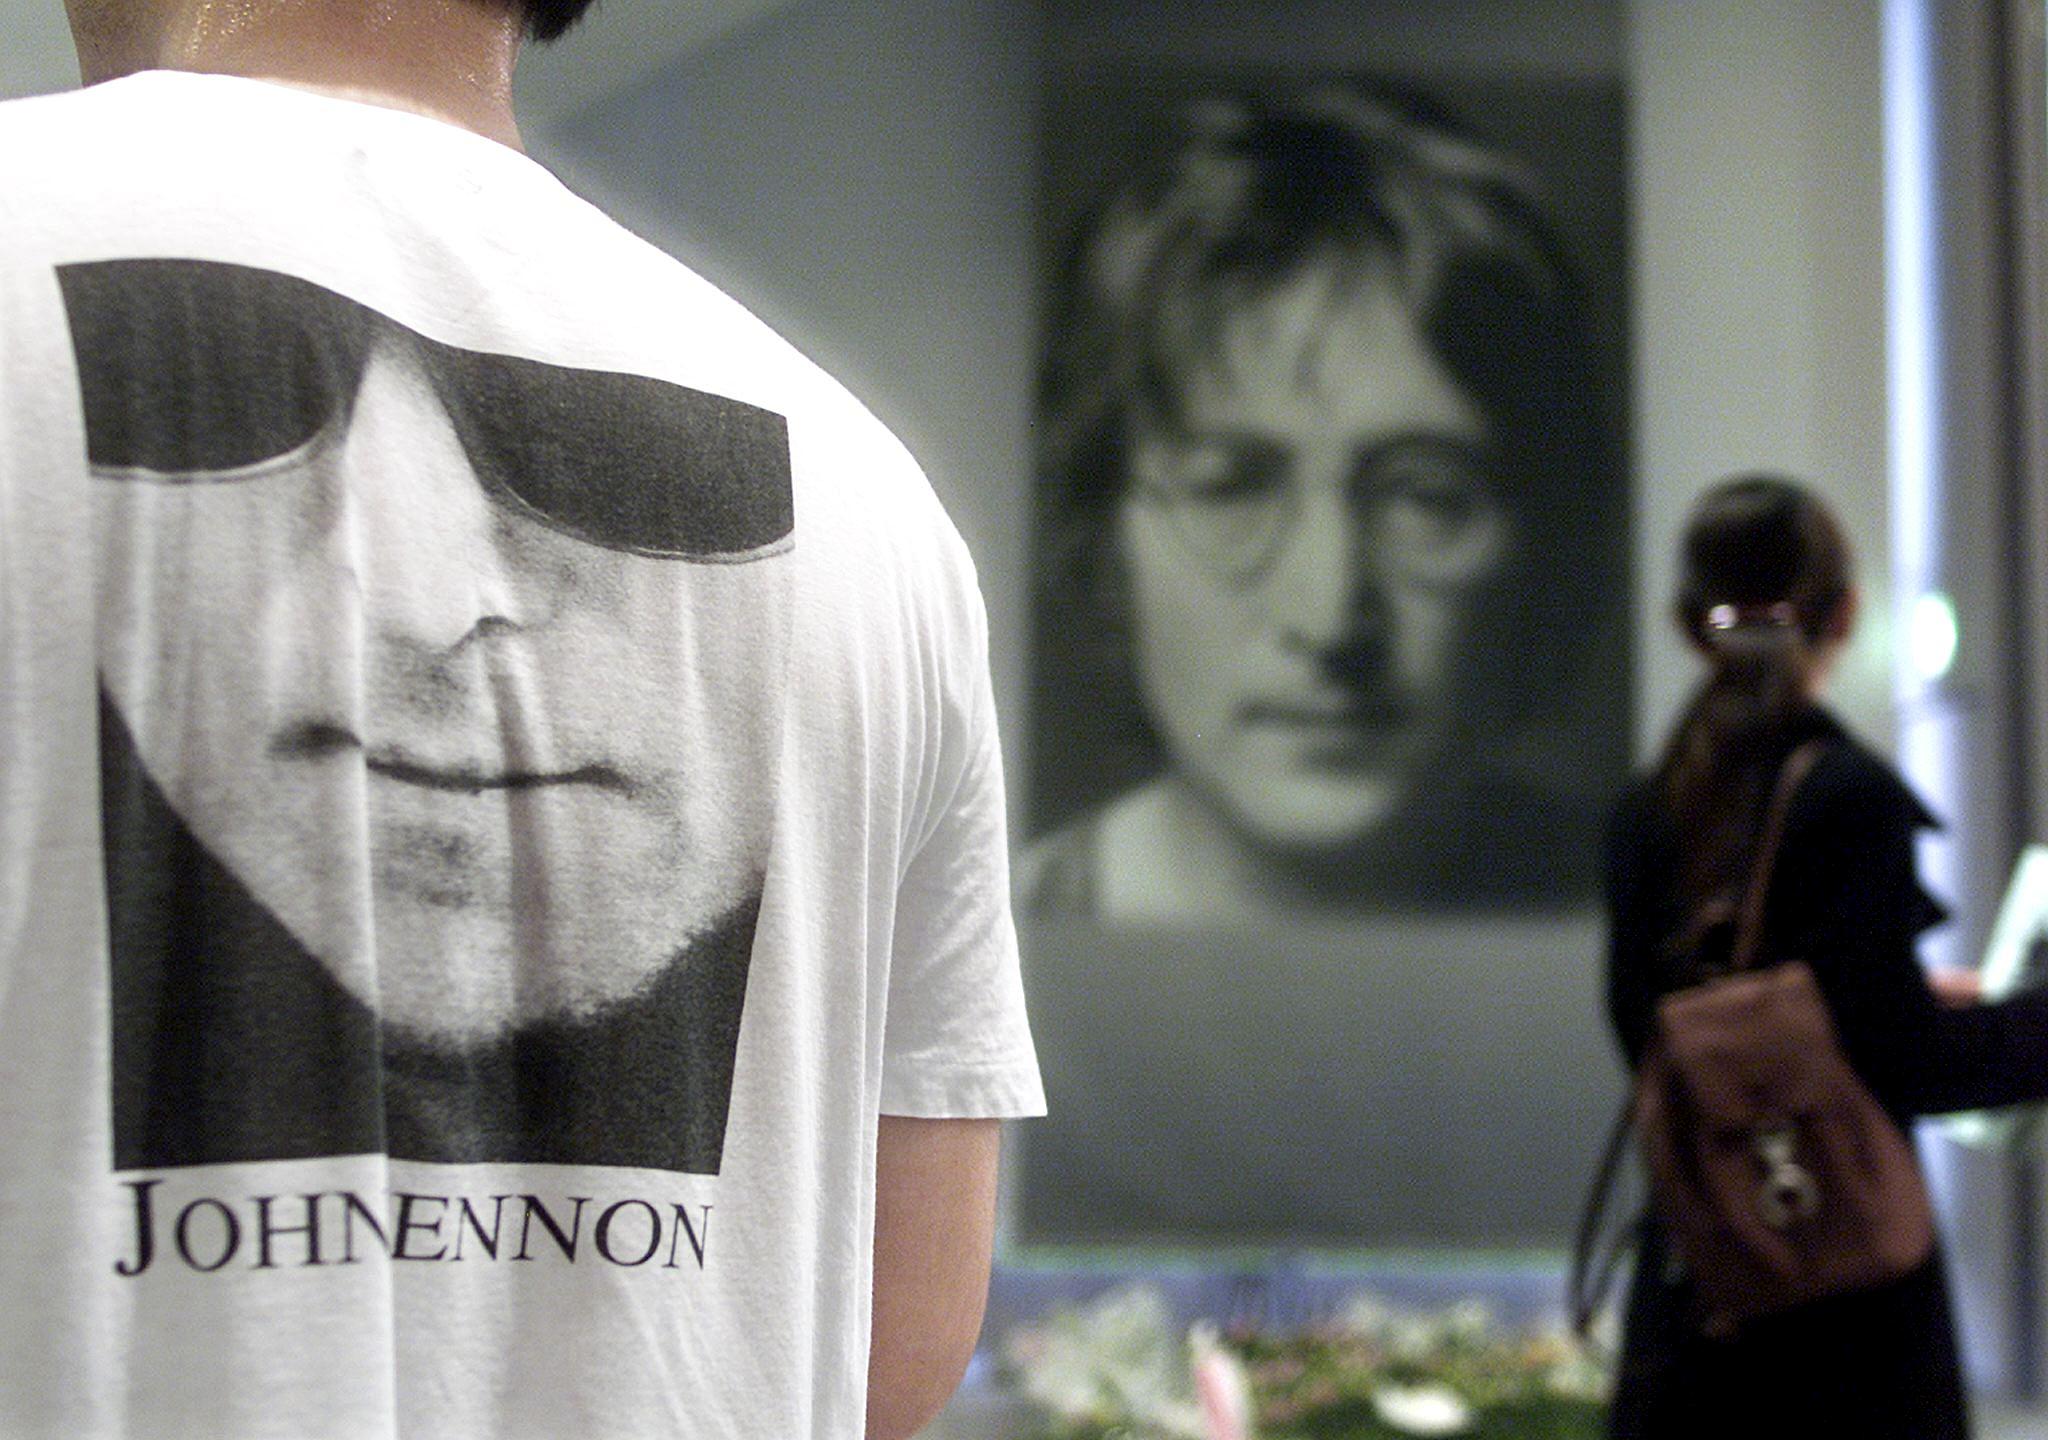 Νέα στοιχεία για τη δολοφονία του Τζον Λένον - Τα άγνωστα κίνητρα σε νέο ντοκιμαντέρ